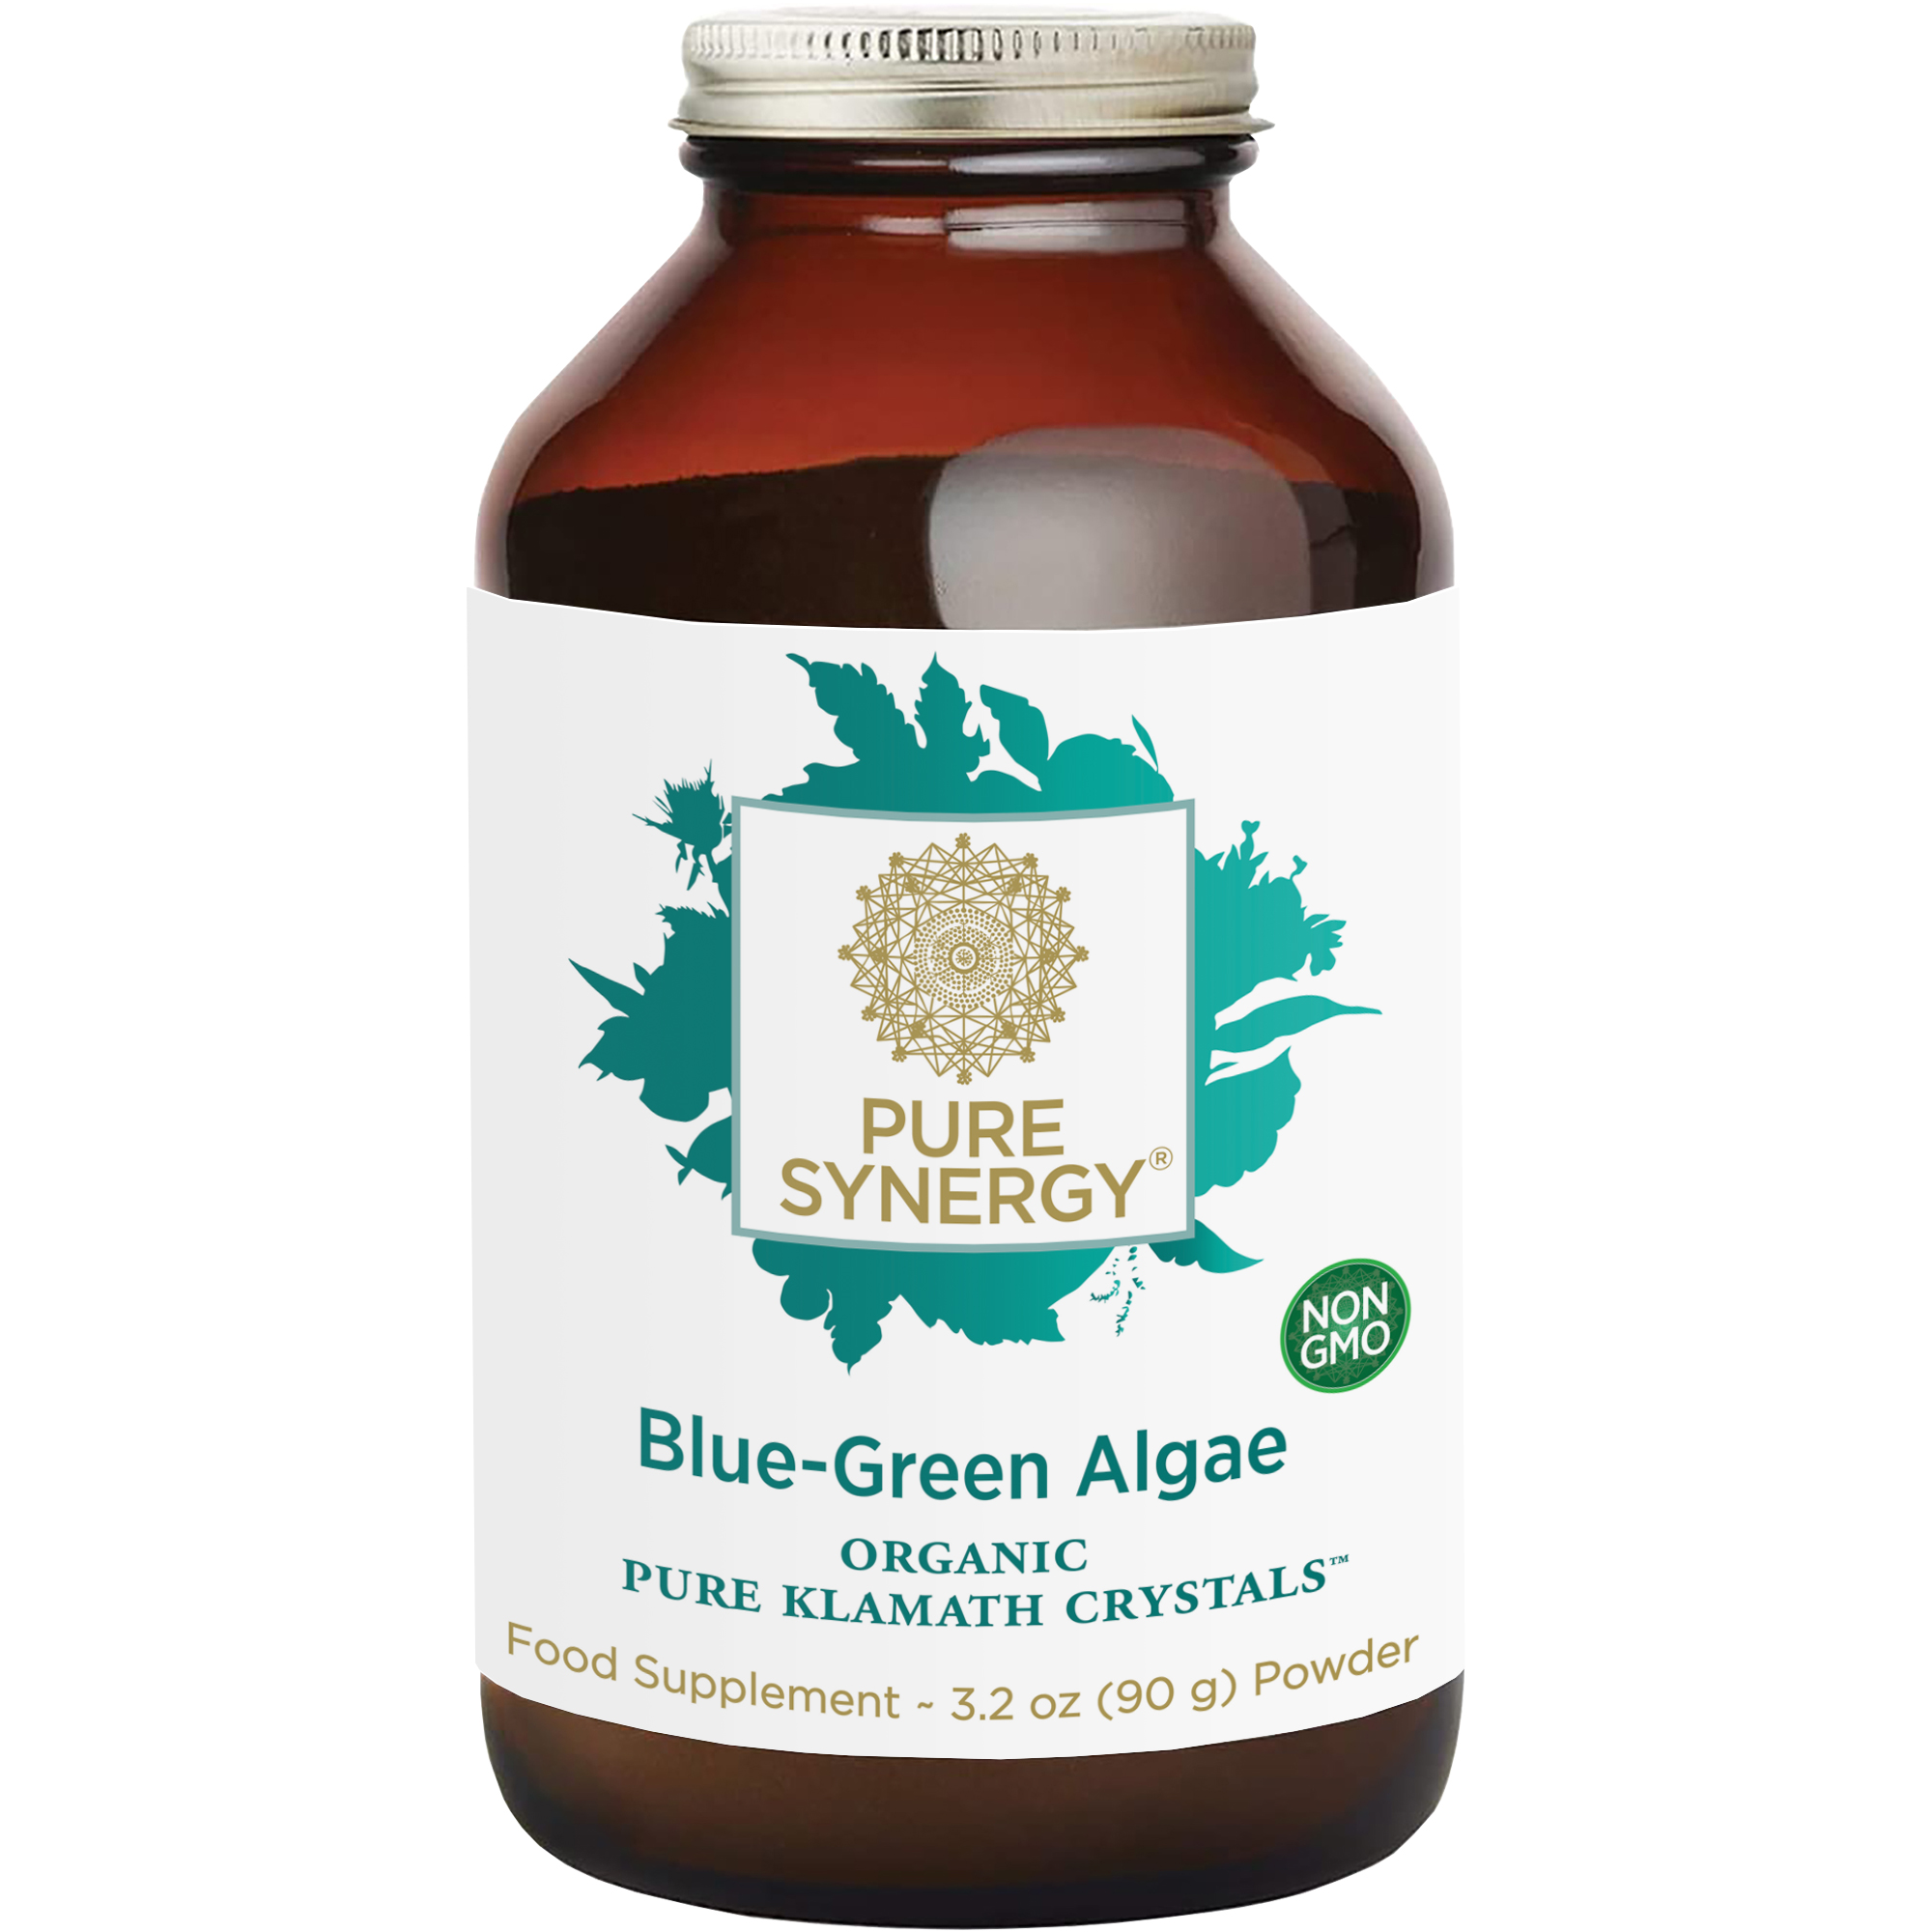 Blue-Green Algae Powder 90g